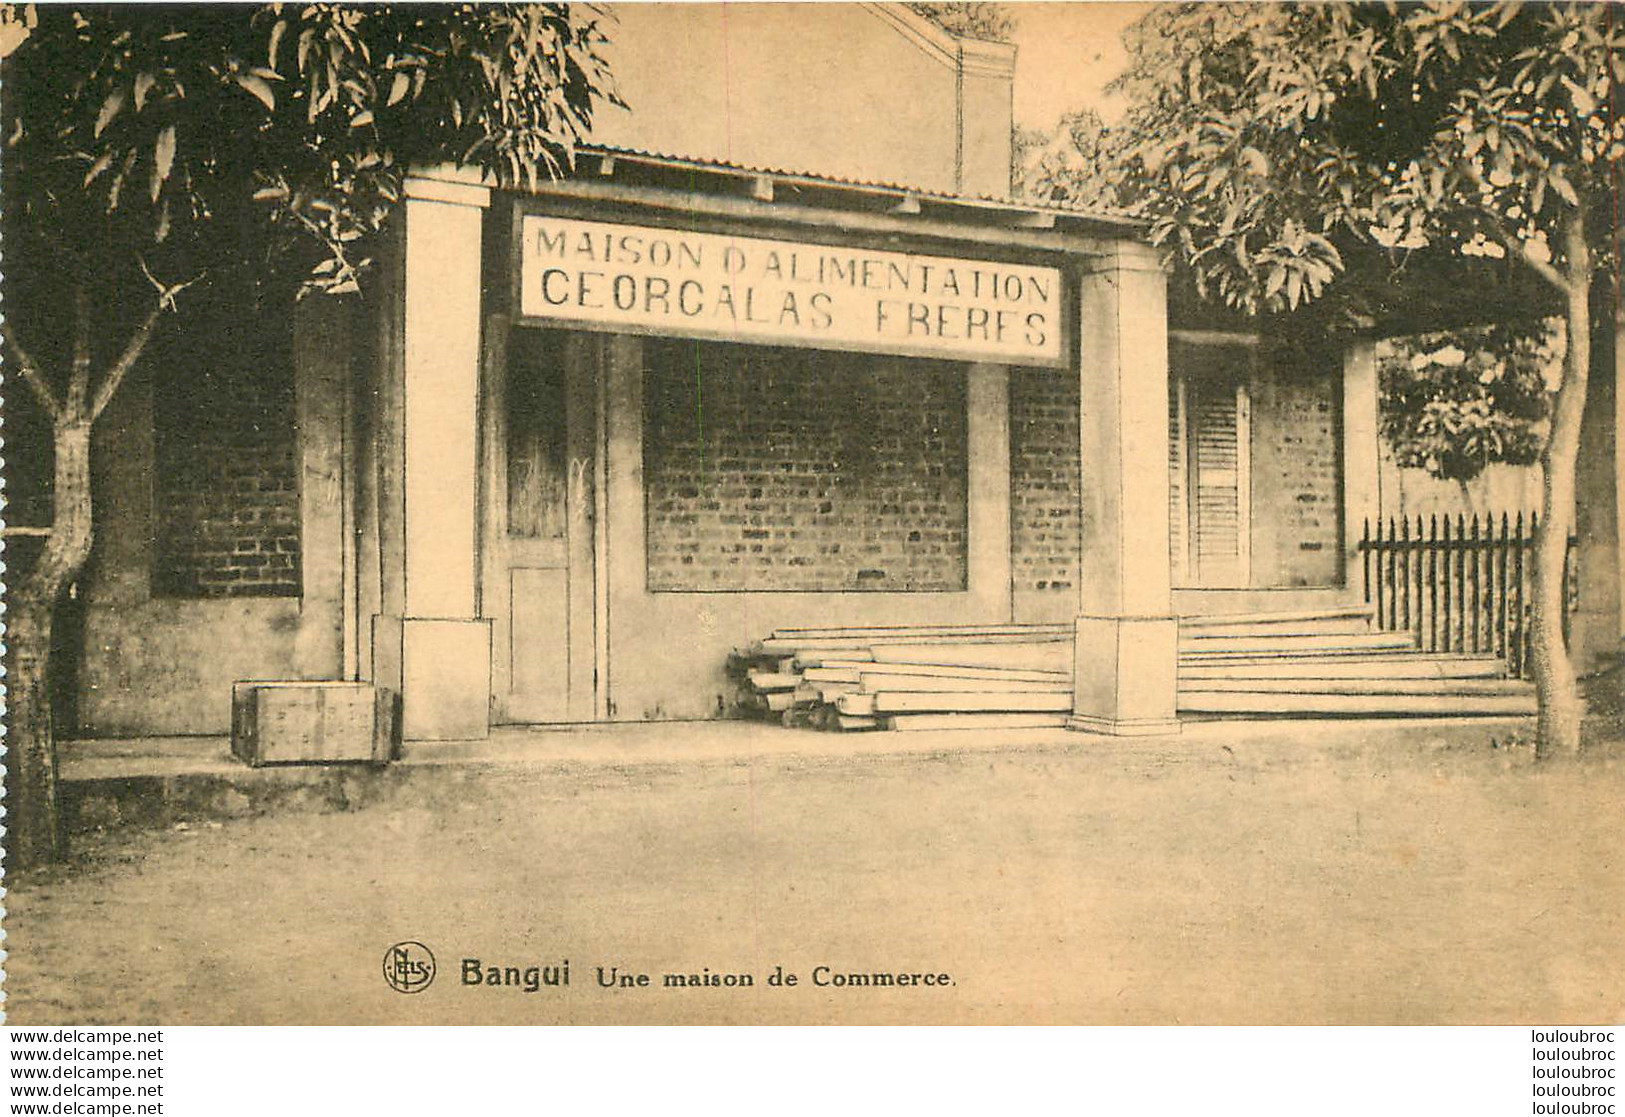 BANGUI UNE MAISON DE COMMERCE  Ref18 - Tchad